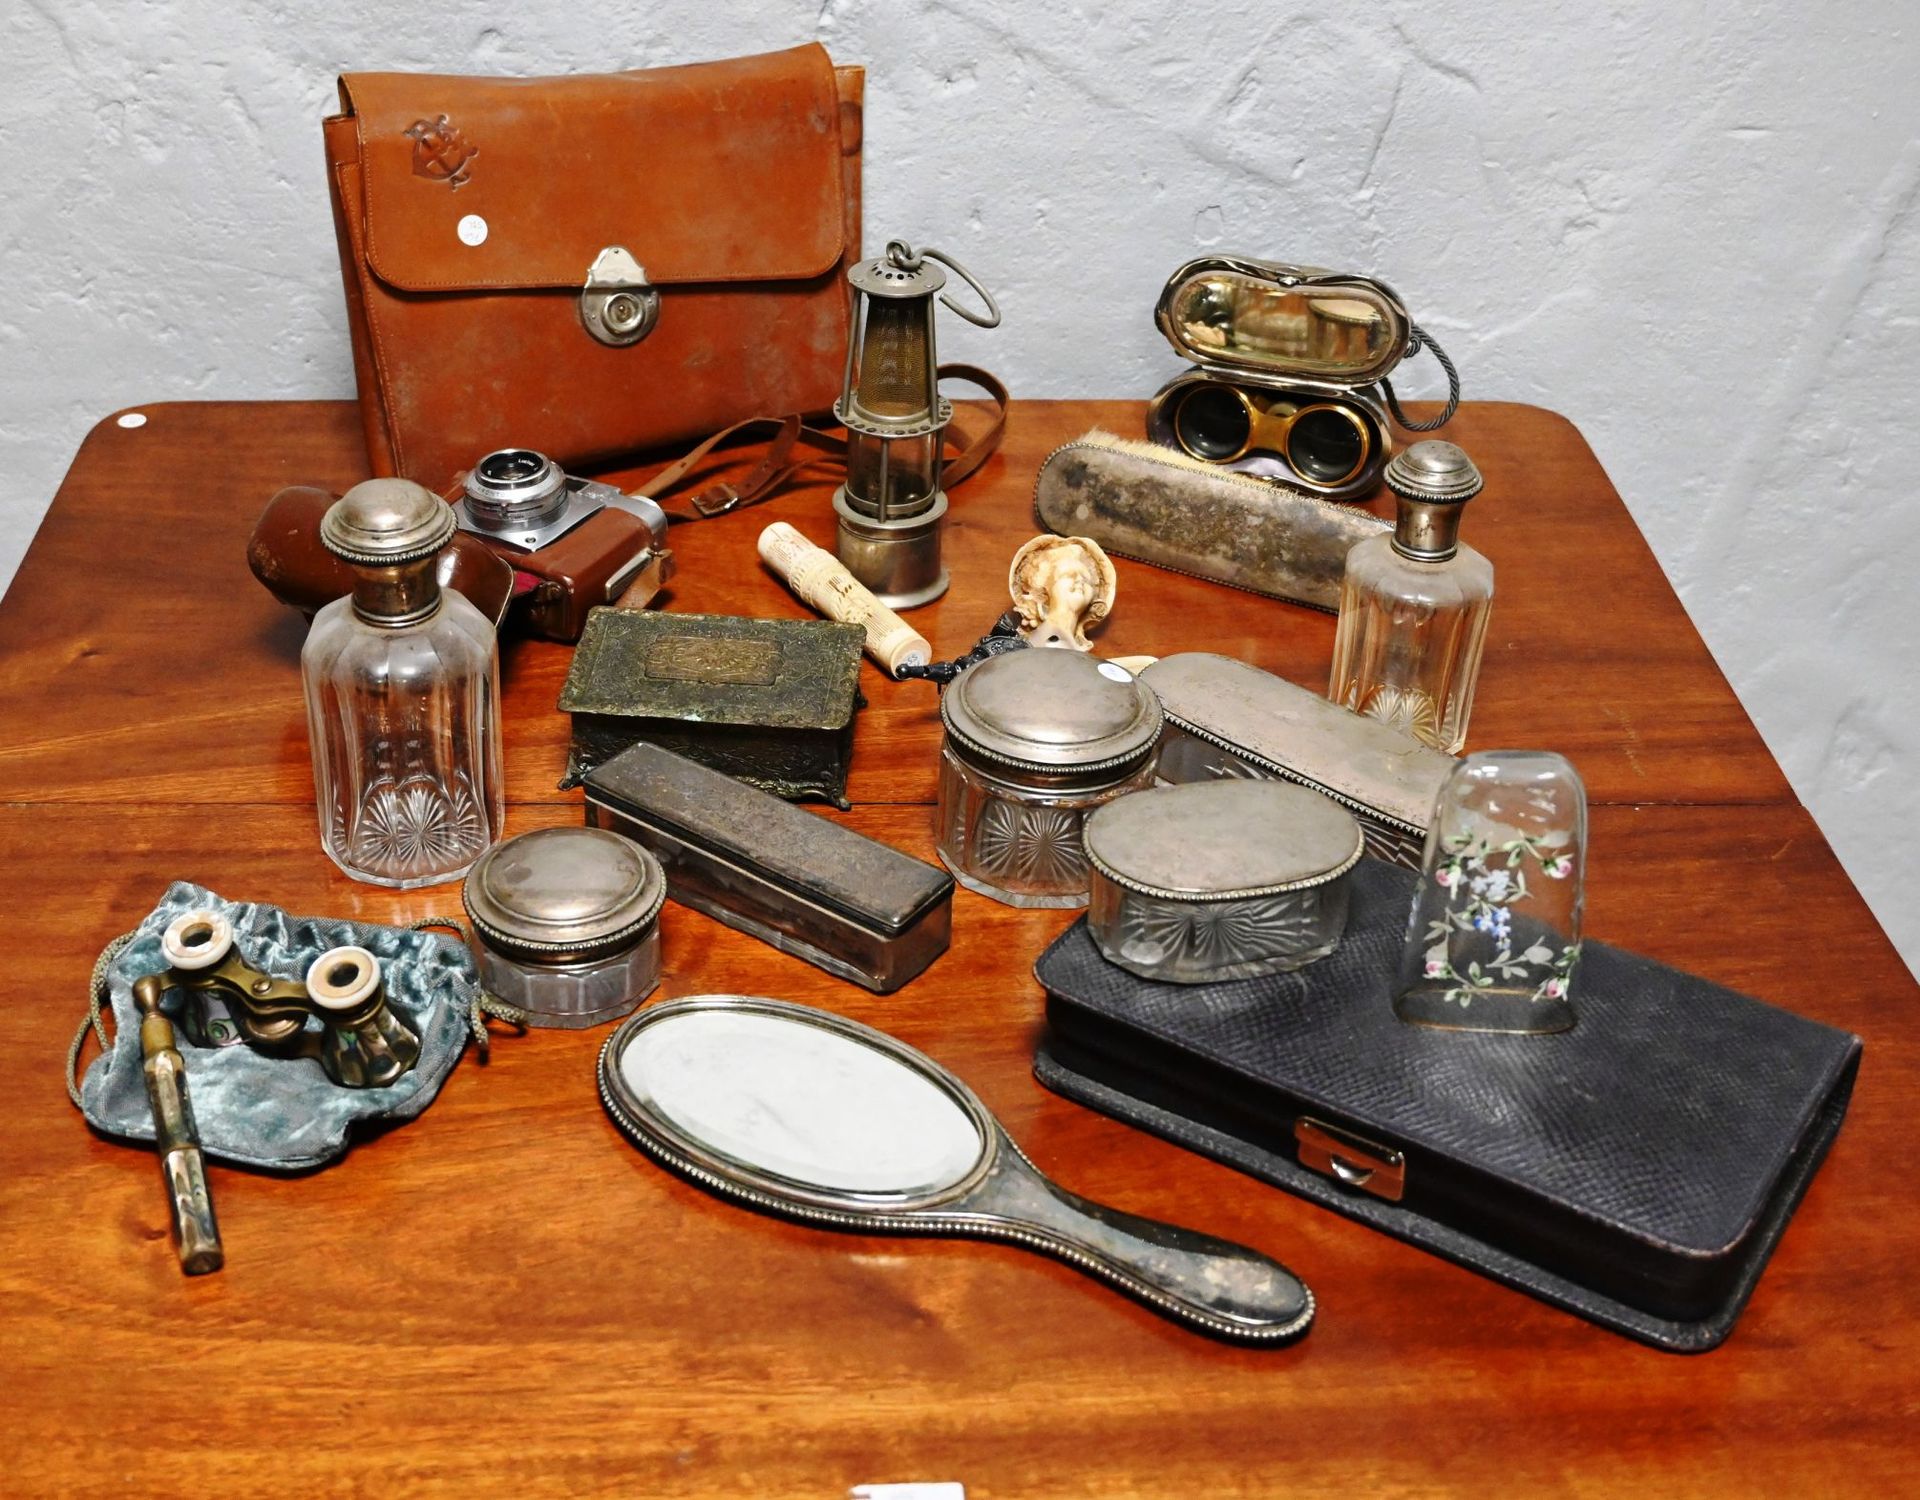 Fond de tiroir 抽屉底部由旅行马桶盒、相机（蔡司圣像）、小矿灯、拨浪鼓、望远镜、...